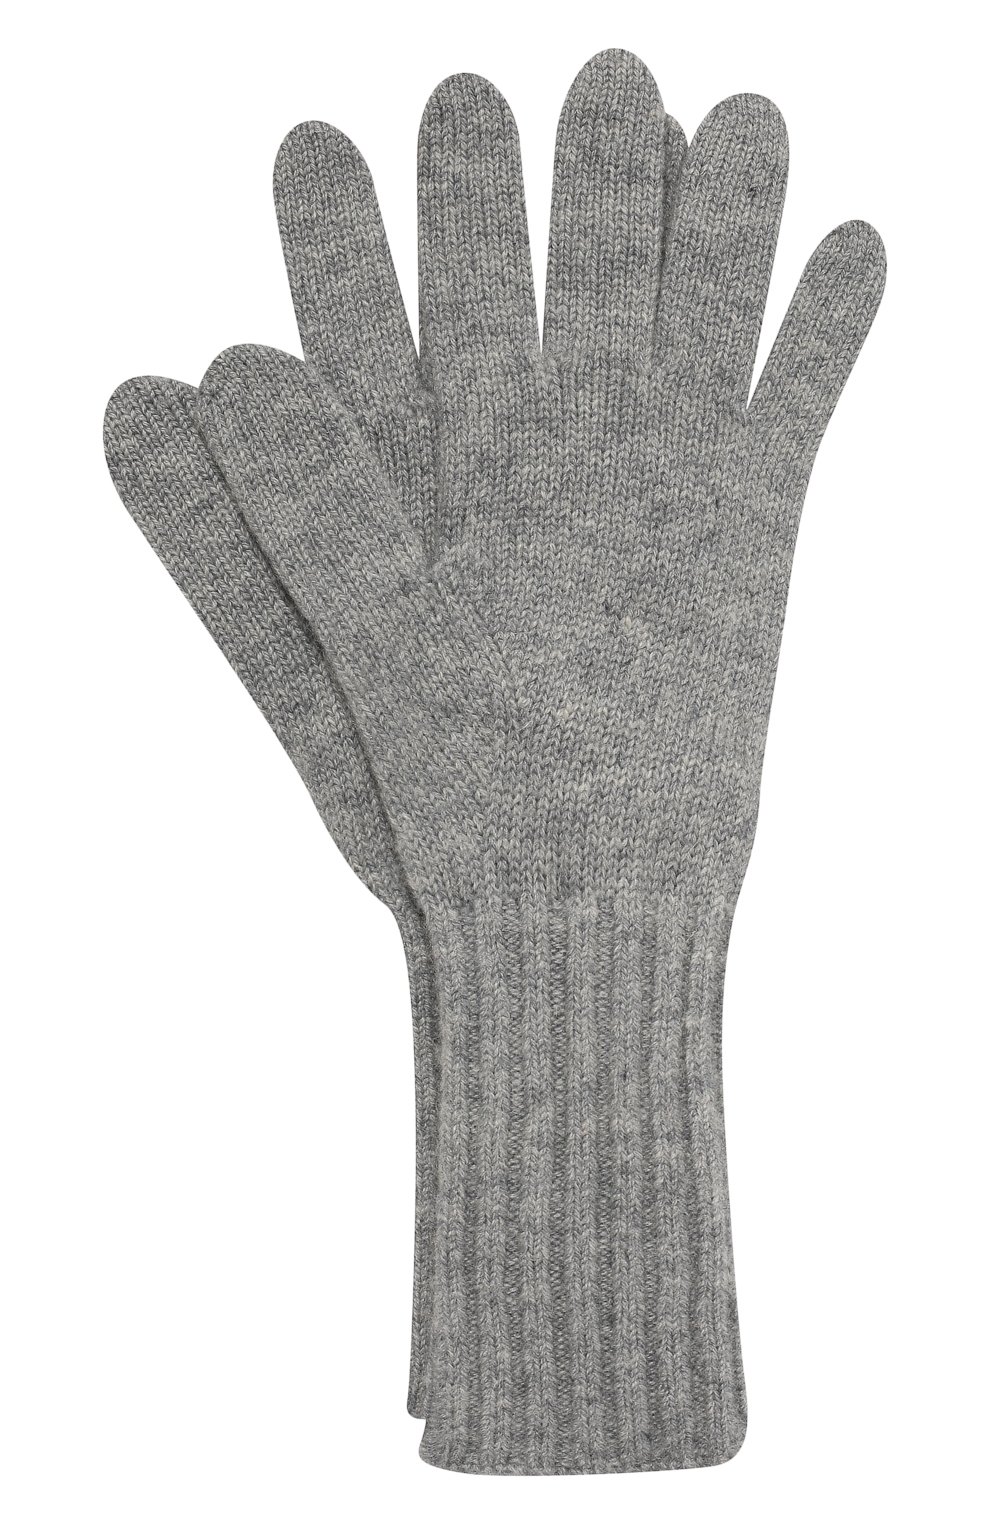 Женские кашемировые перчатки TEGIN серого цвета, арт. 5236 | Фото 1 (Материал: Текстиль, Кашемир, Шерсть; Кросс-КТ: Трикотаж)